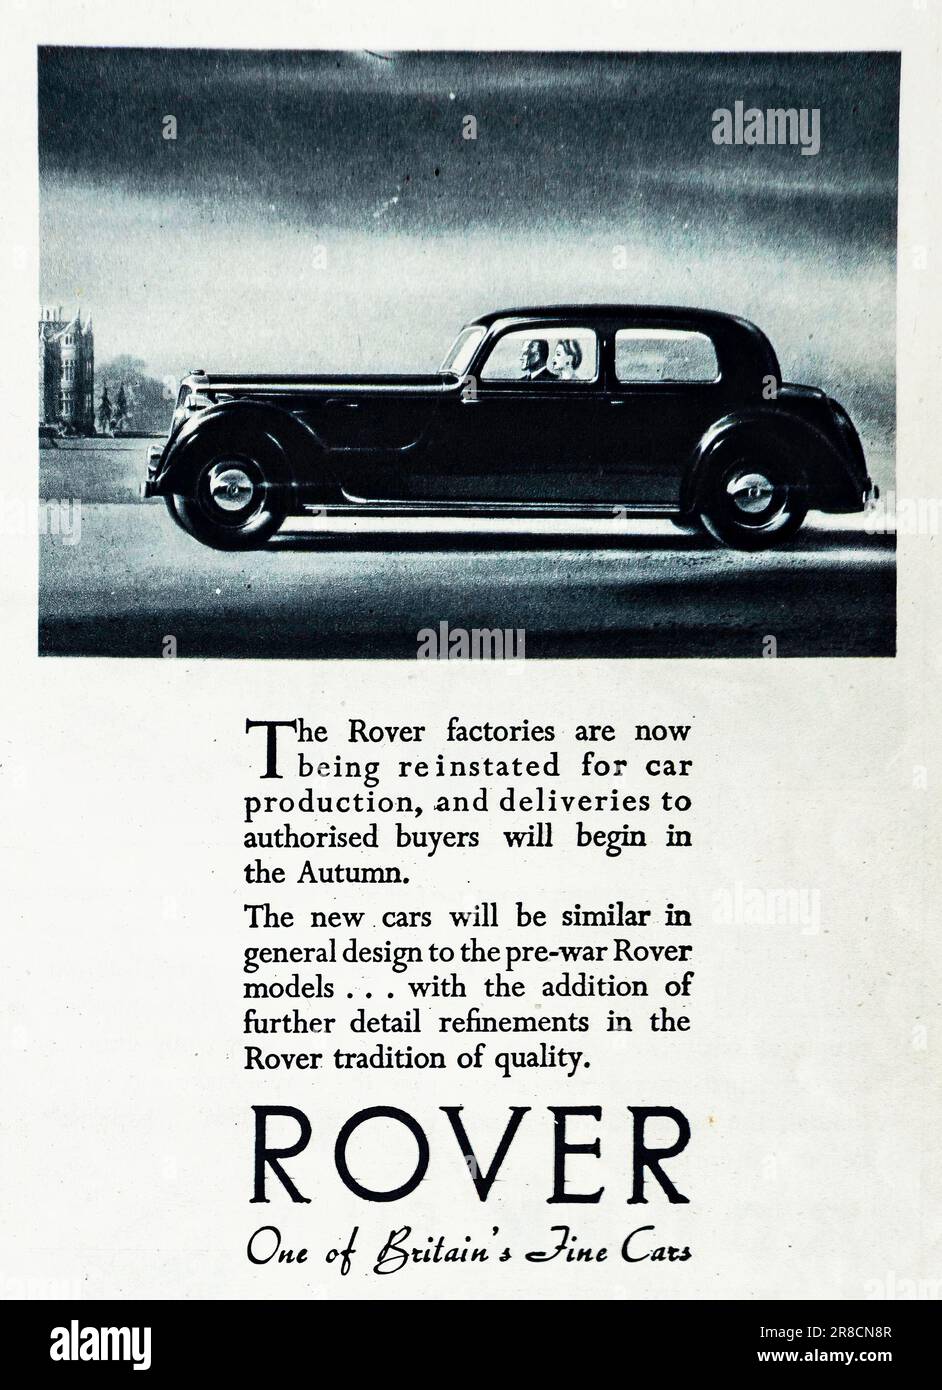 Eine 1945-Werbung für Rover Autos, die als eines der besten Autos Großbritanniens beschrieben wird. In der Werbung wird darauf hingewiesen, dass die Werke von Rover nach Welt War2 wieder in Betrieb genommen werden und dass die Auslieferungen in Kürze beginnen werden. Die neue Fahrzeugcharge wird ähnlich wie Vorkriegsmodelle gestaltet sein und die traditionelle Qualität und Kultiviertheit von Rover beibehalten. Stockfoto